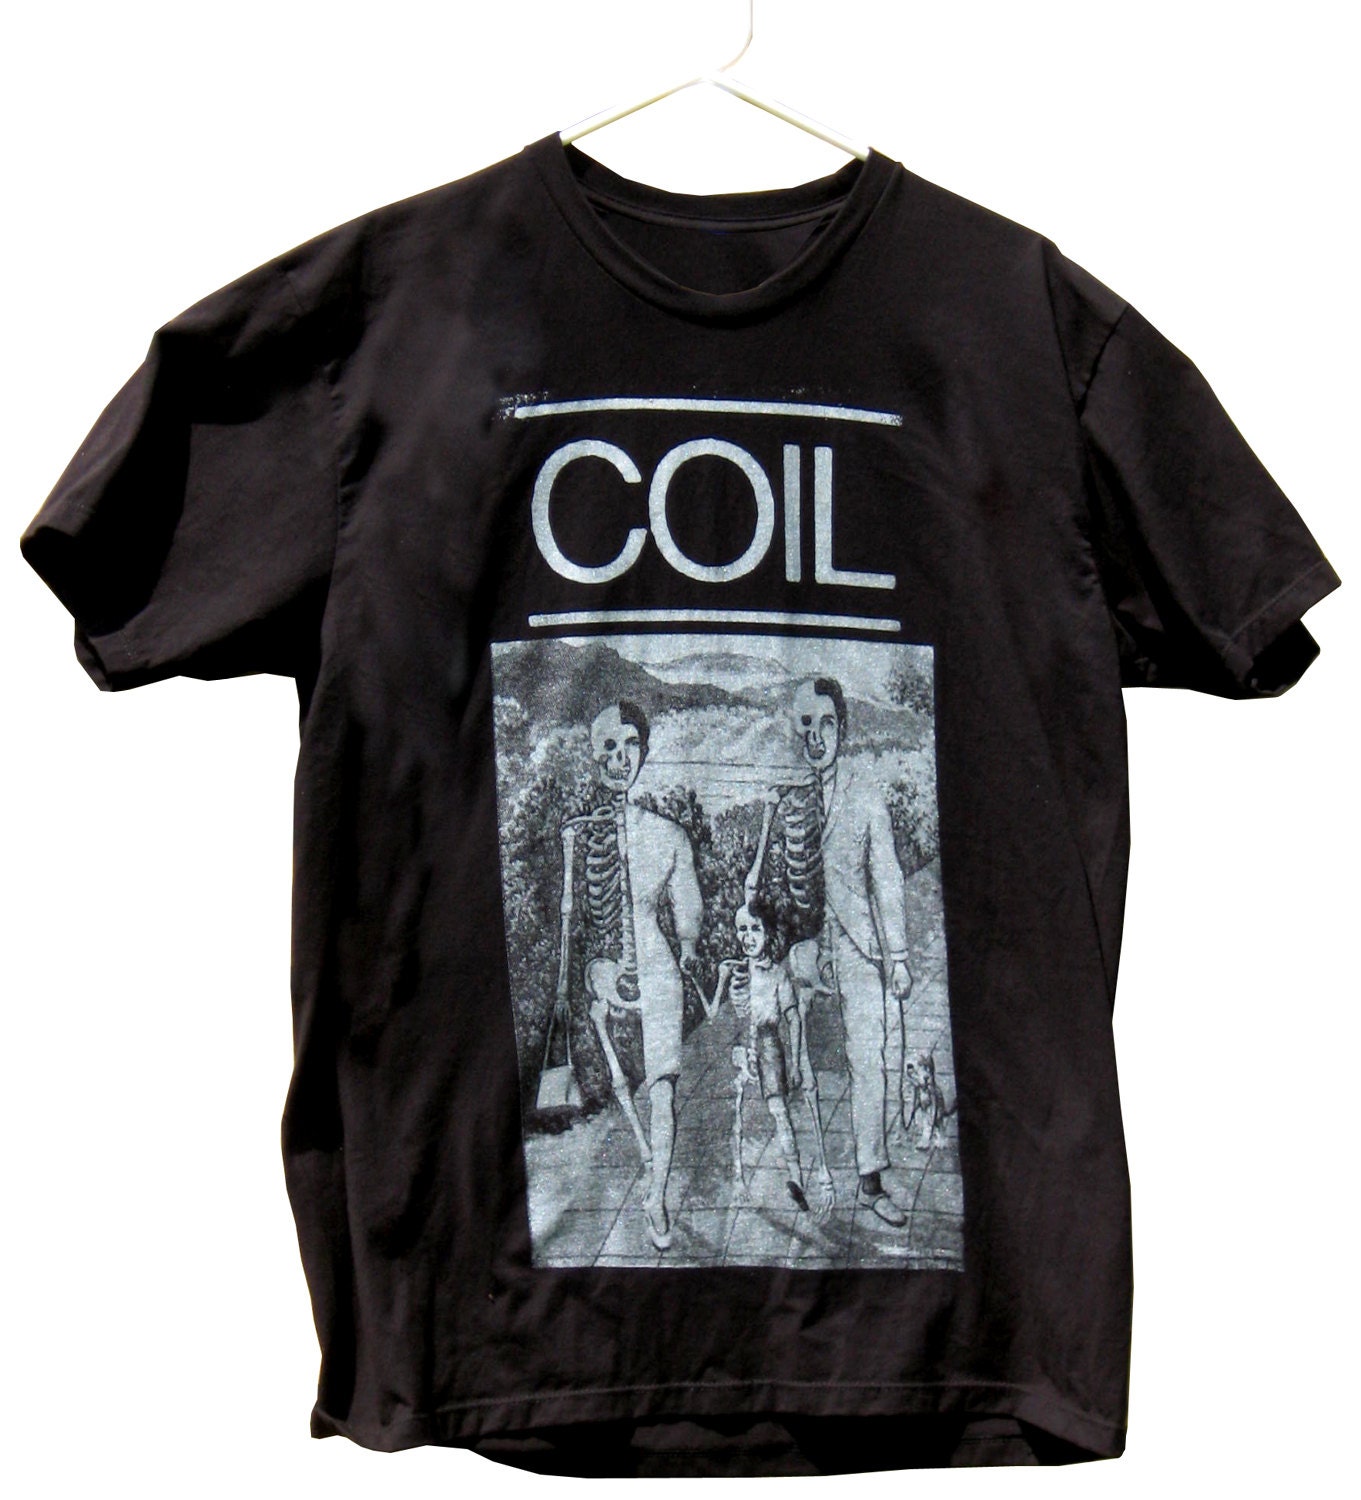 COIL T-Shirt sizes S-M-L-XL